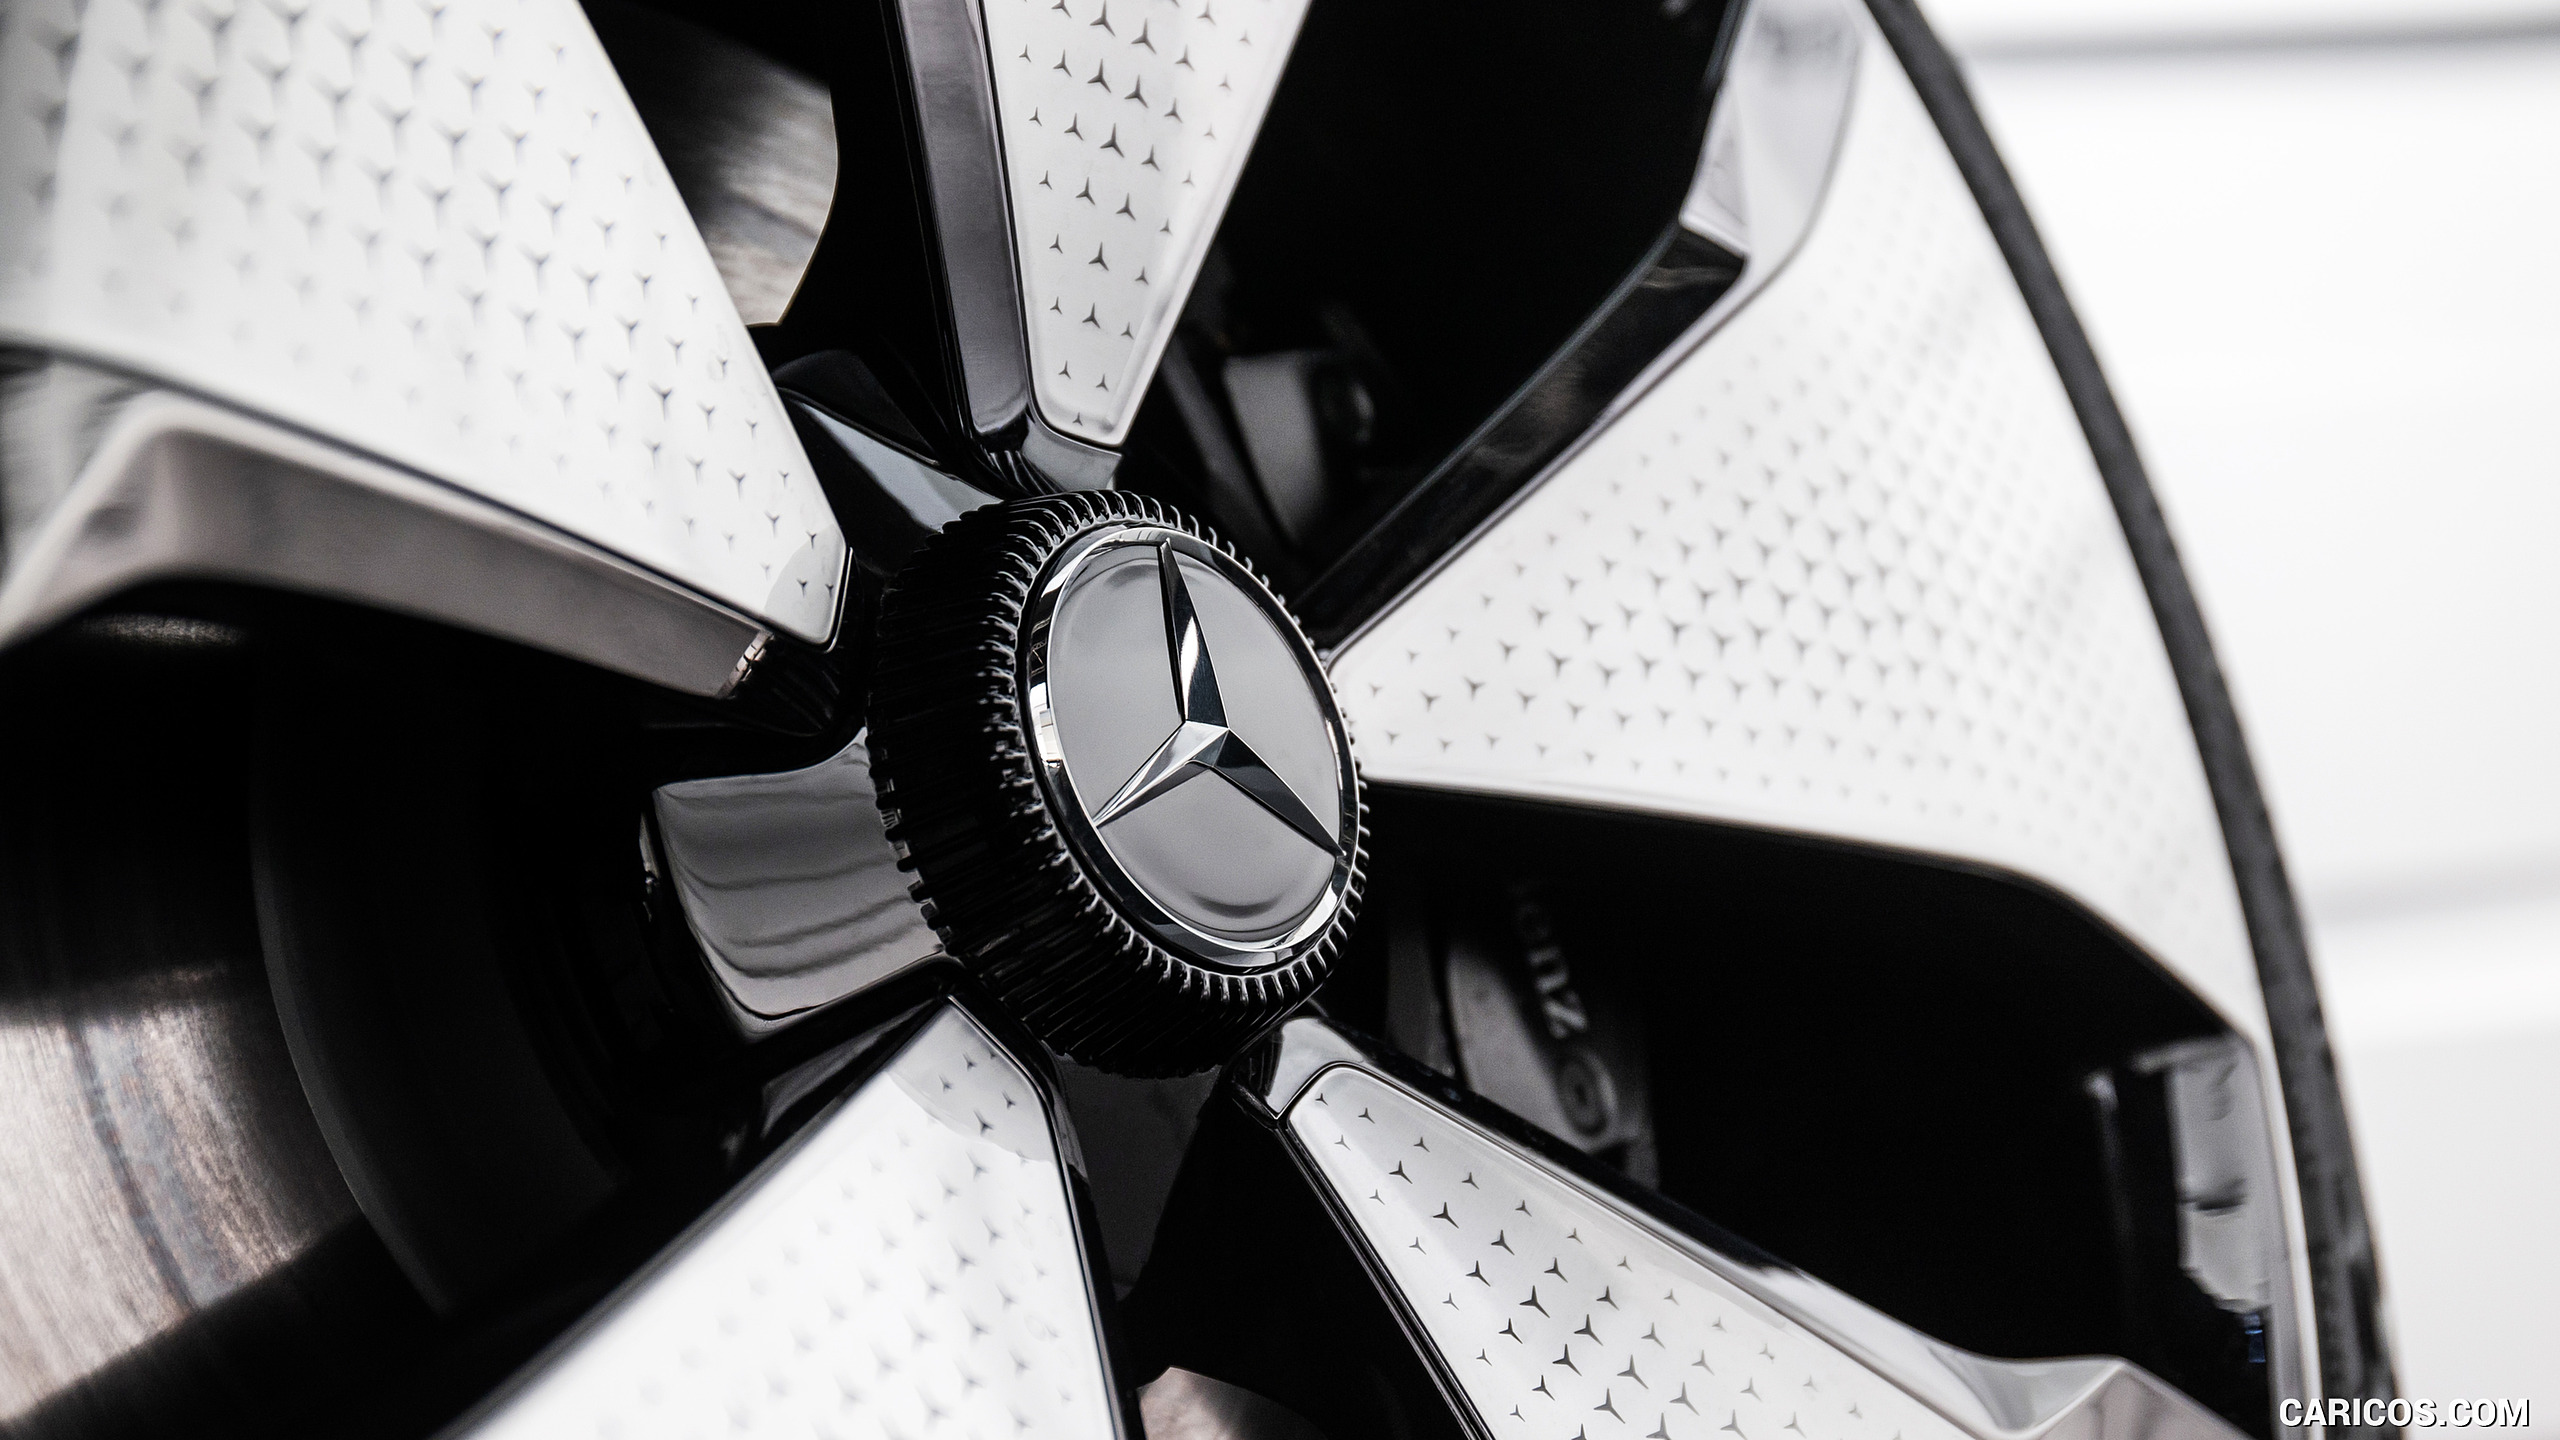 2021 Mercedes-Benz EQT Concept - Wheel, #24 of 51